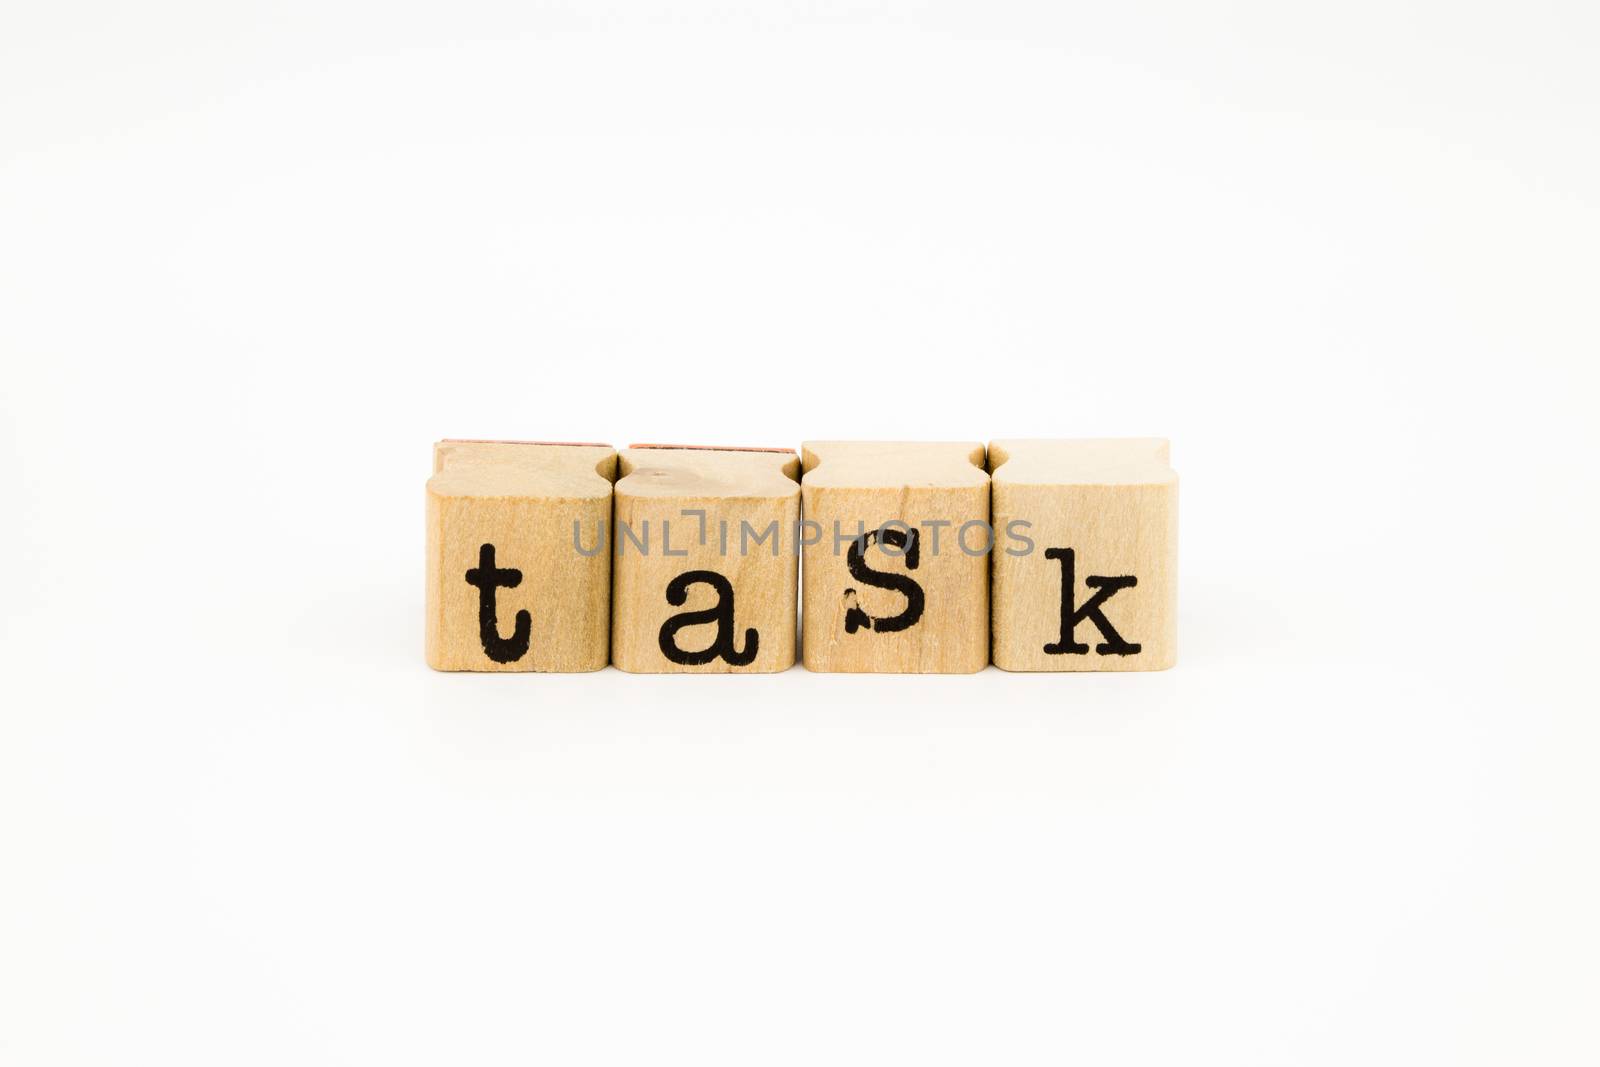 task wording isolate on white background by vinnstock